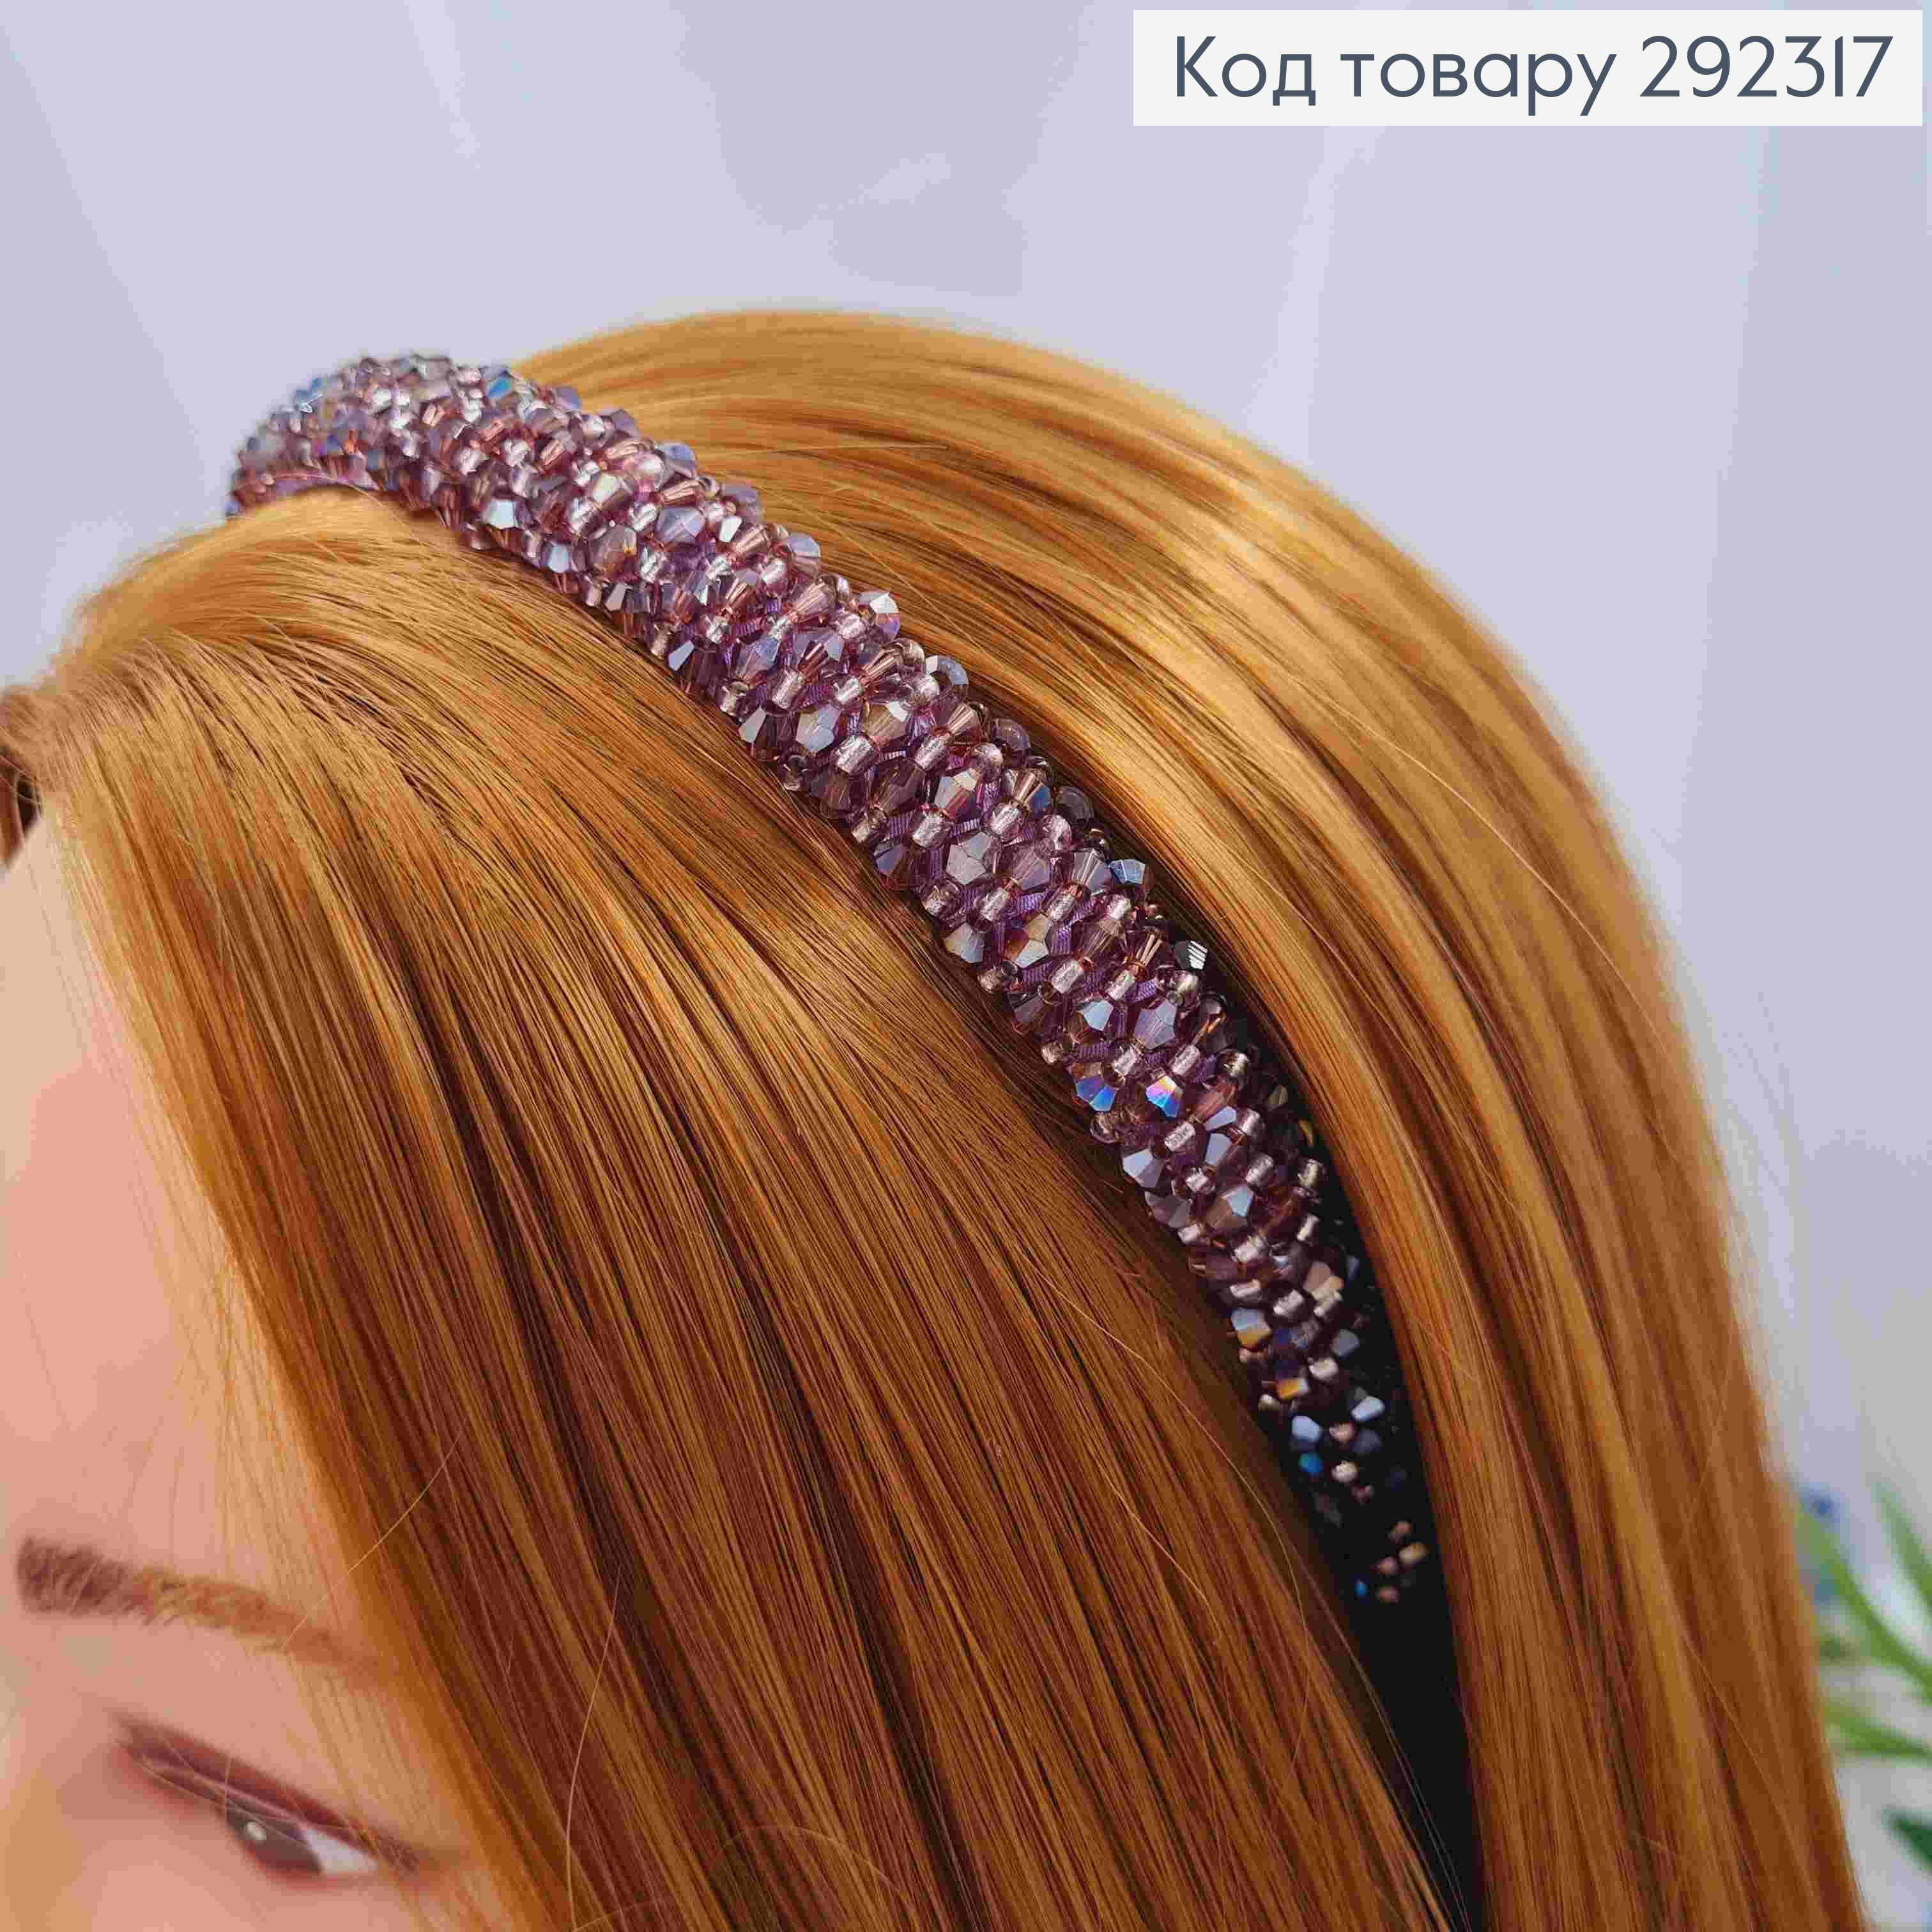 Обруч металевий плетений Стеклярусом, Фіолетового кольору, 1,5см. 292317 фото 2